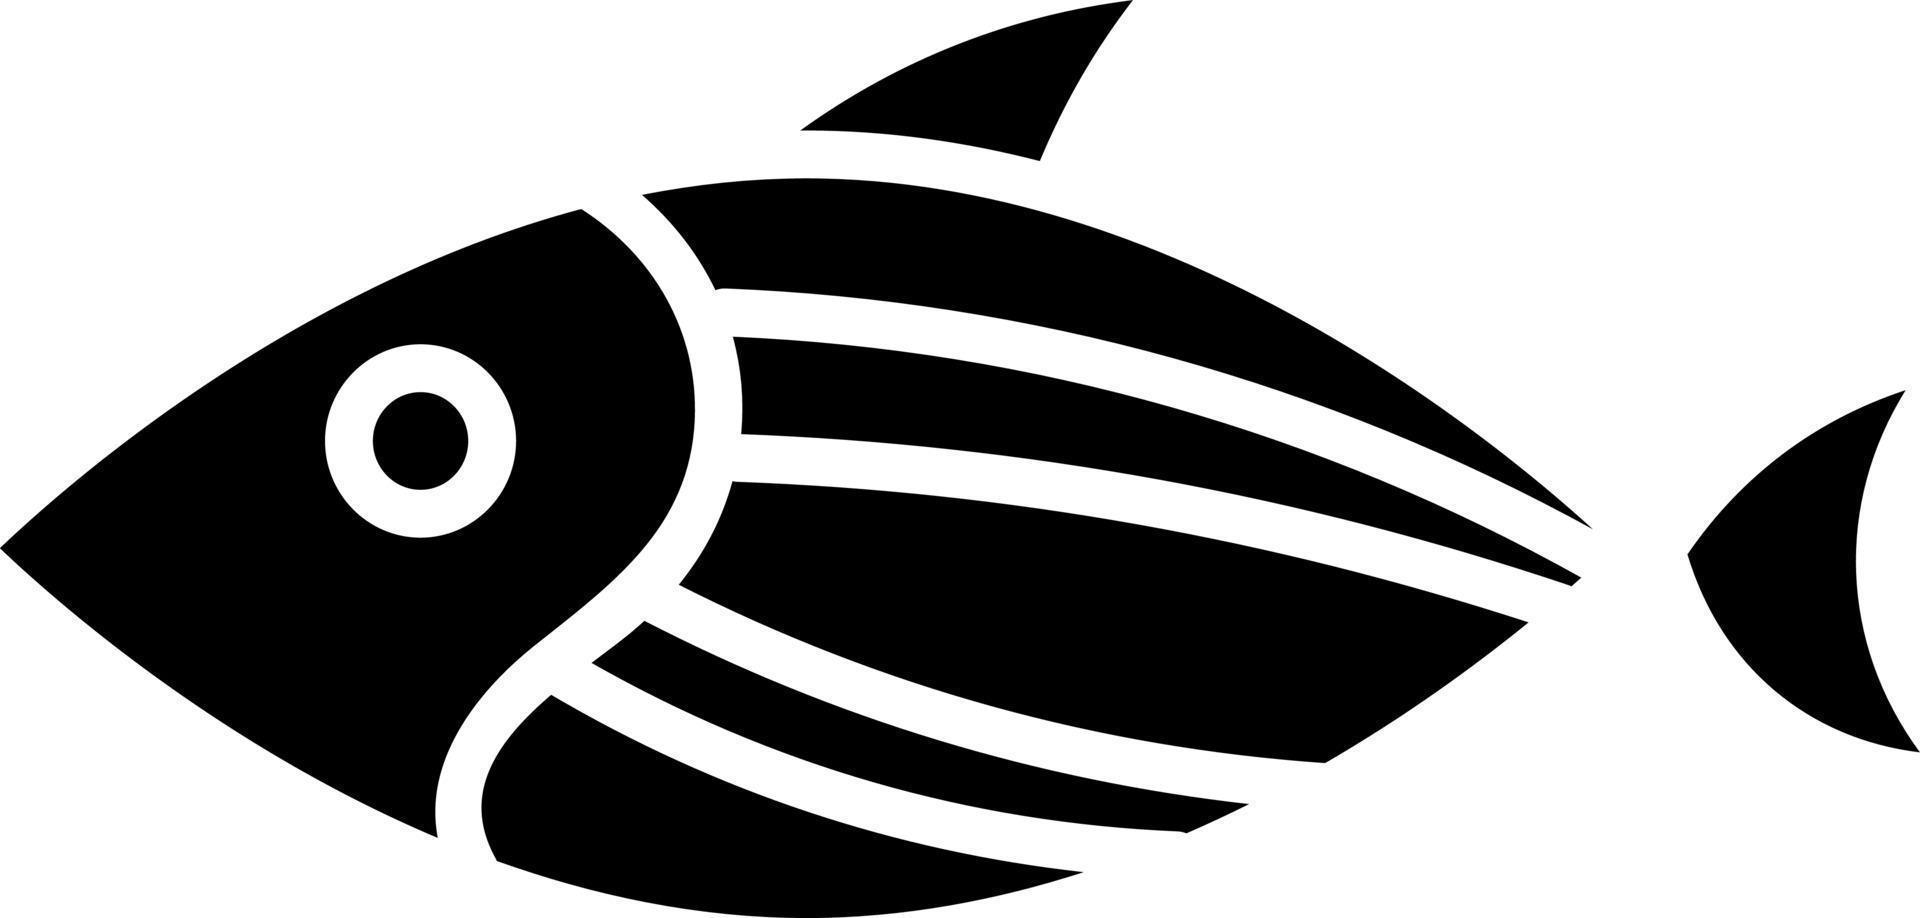 poisson de forme pointue, illustration, vecteur sur fond blanc.